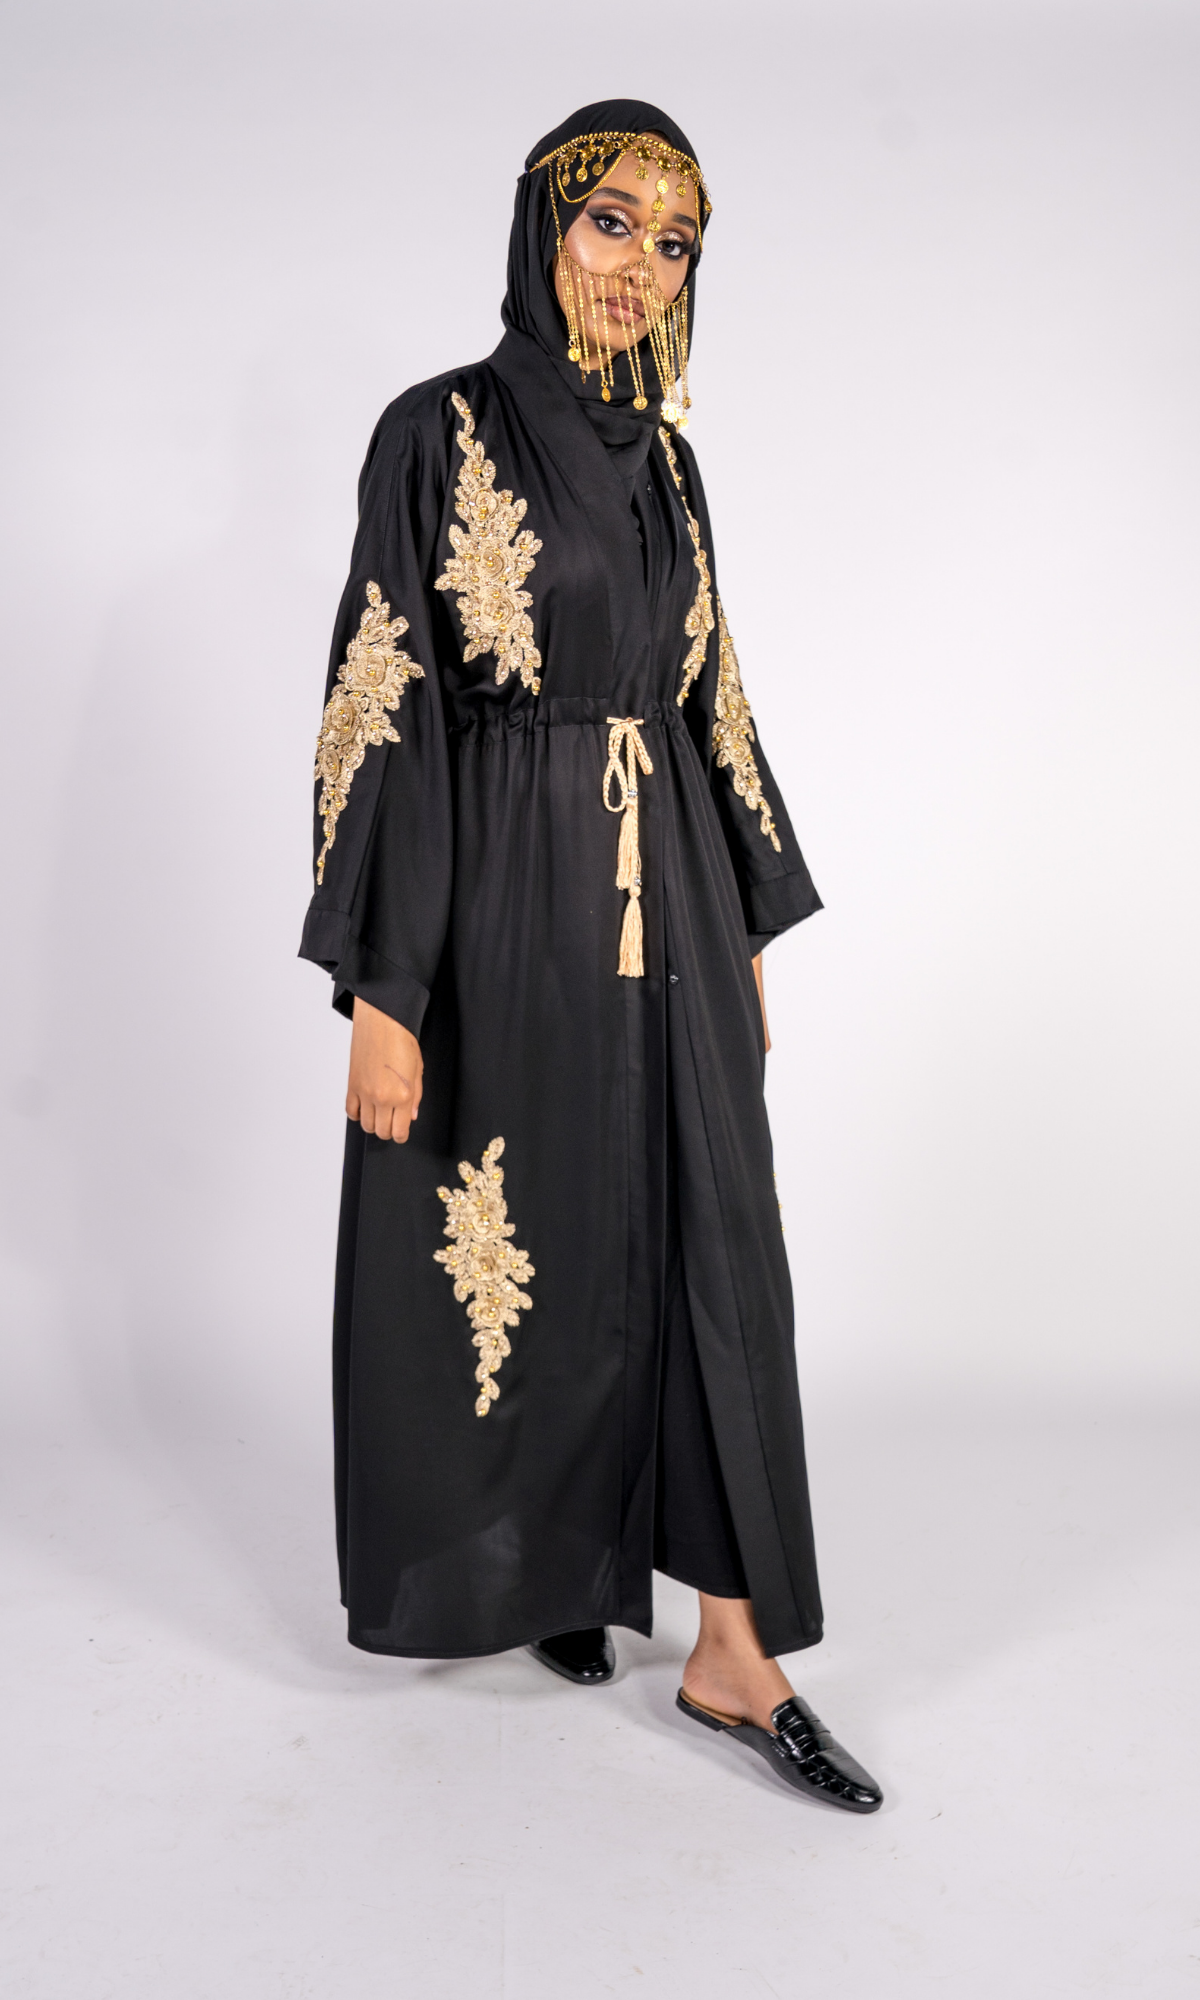 Sheikha Embellished Jacket - Black